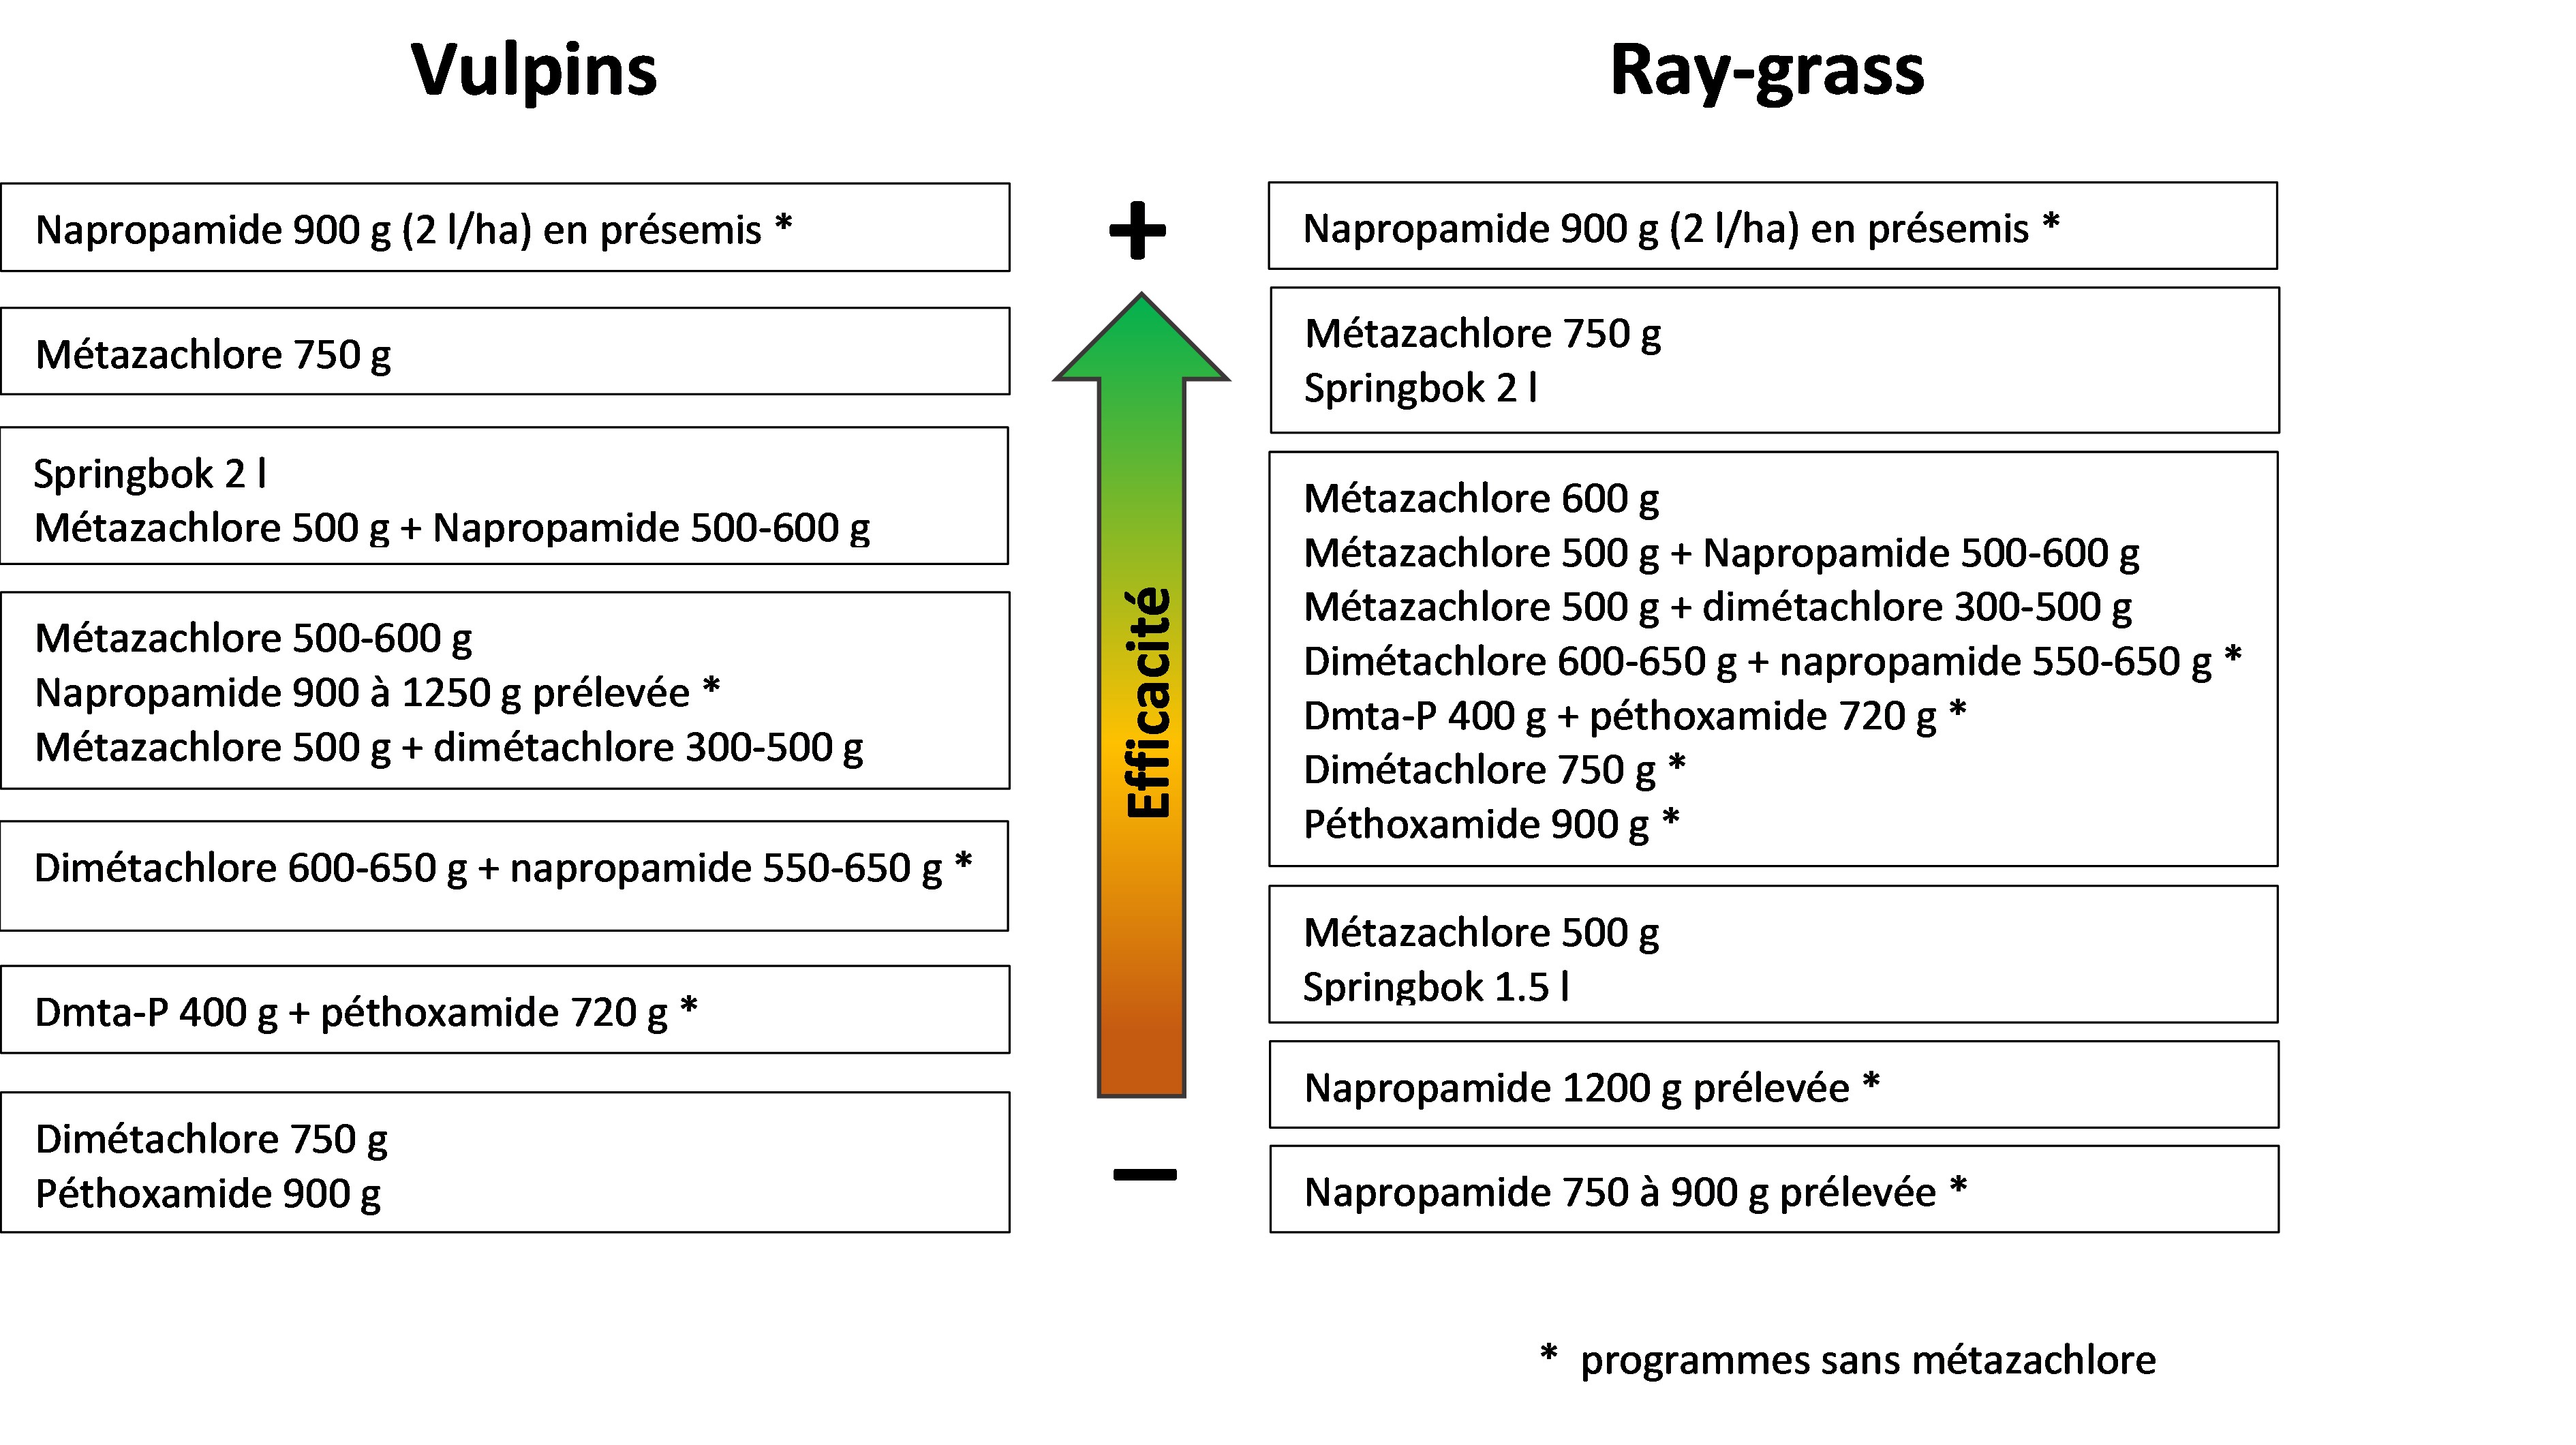 Synthèse des efficacités sur vulpins et ray-grass des applications au semis (essais de Terres Inovia)